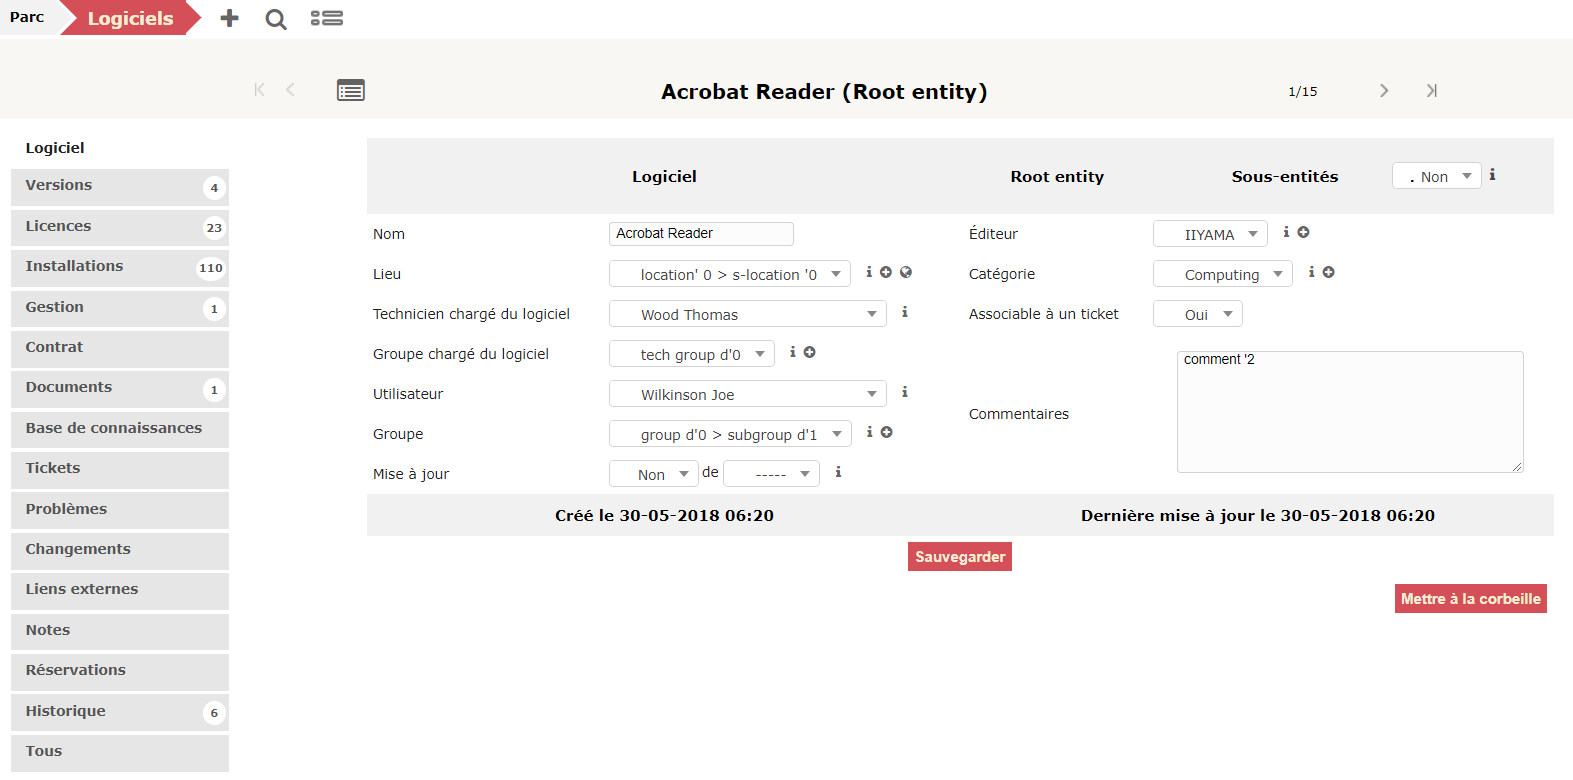 Fiche descriptive du logiciel Acrobat Reader